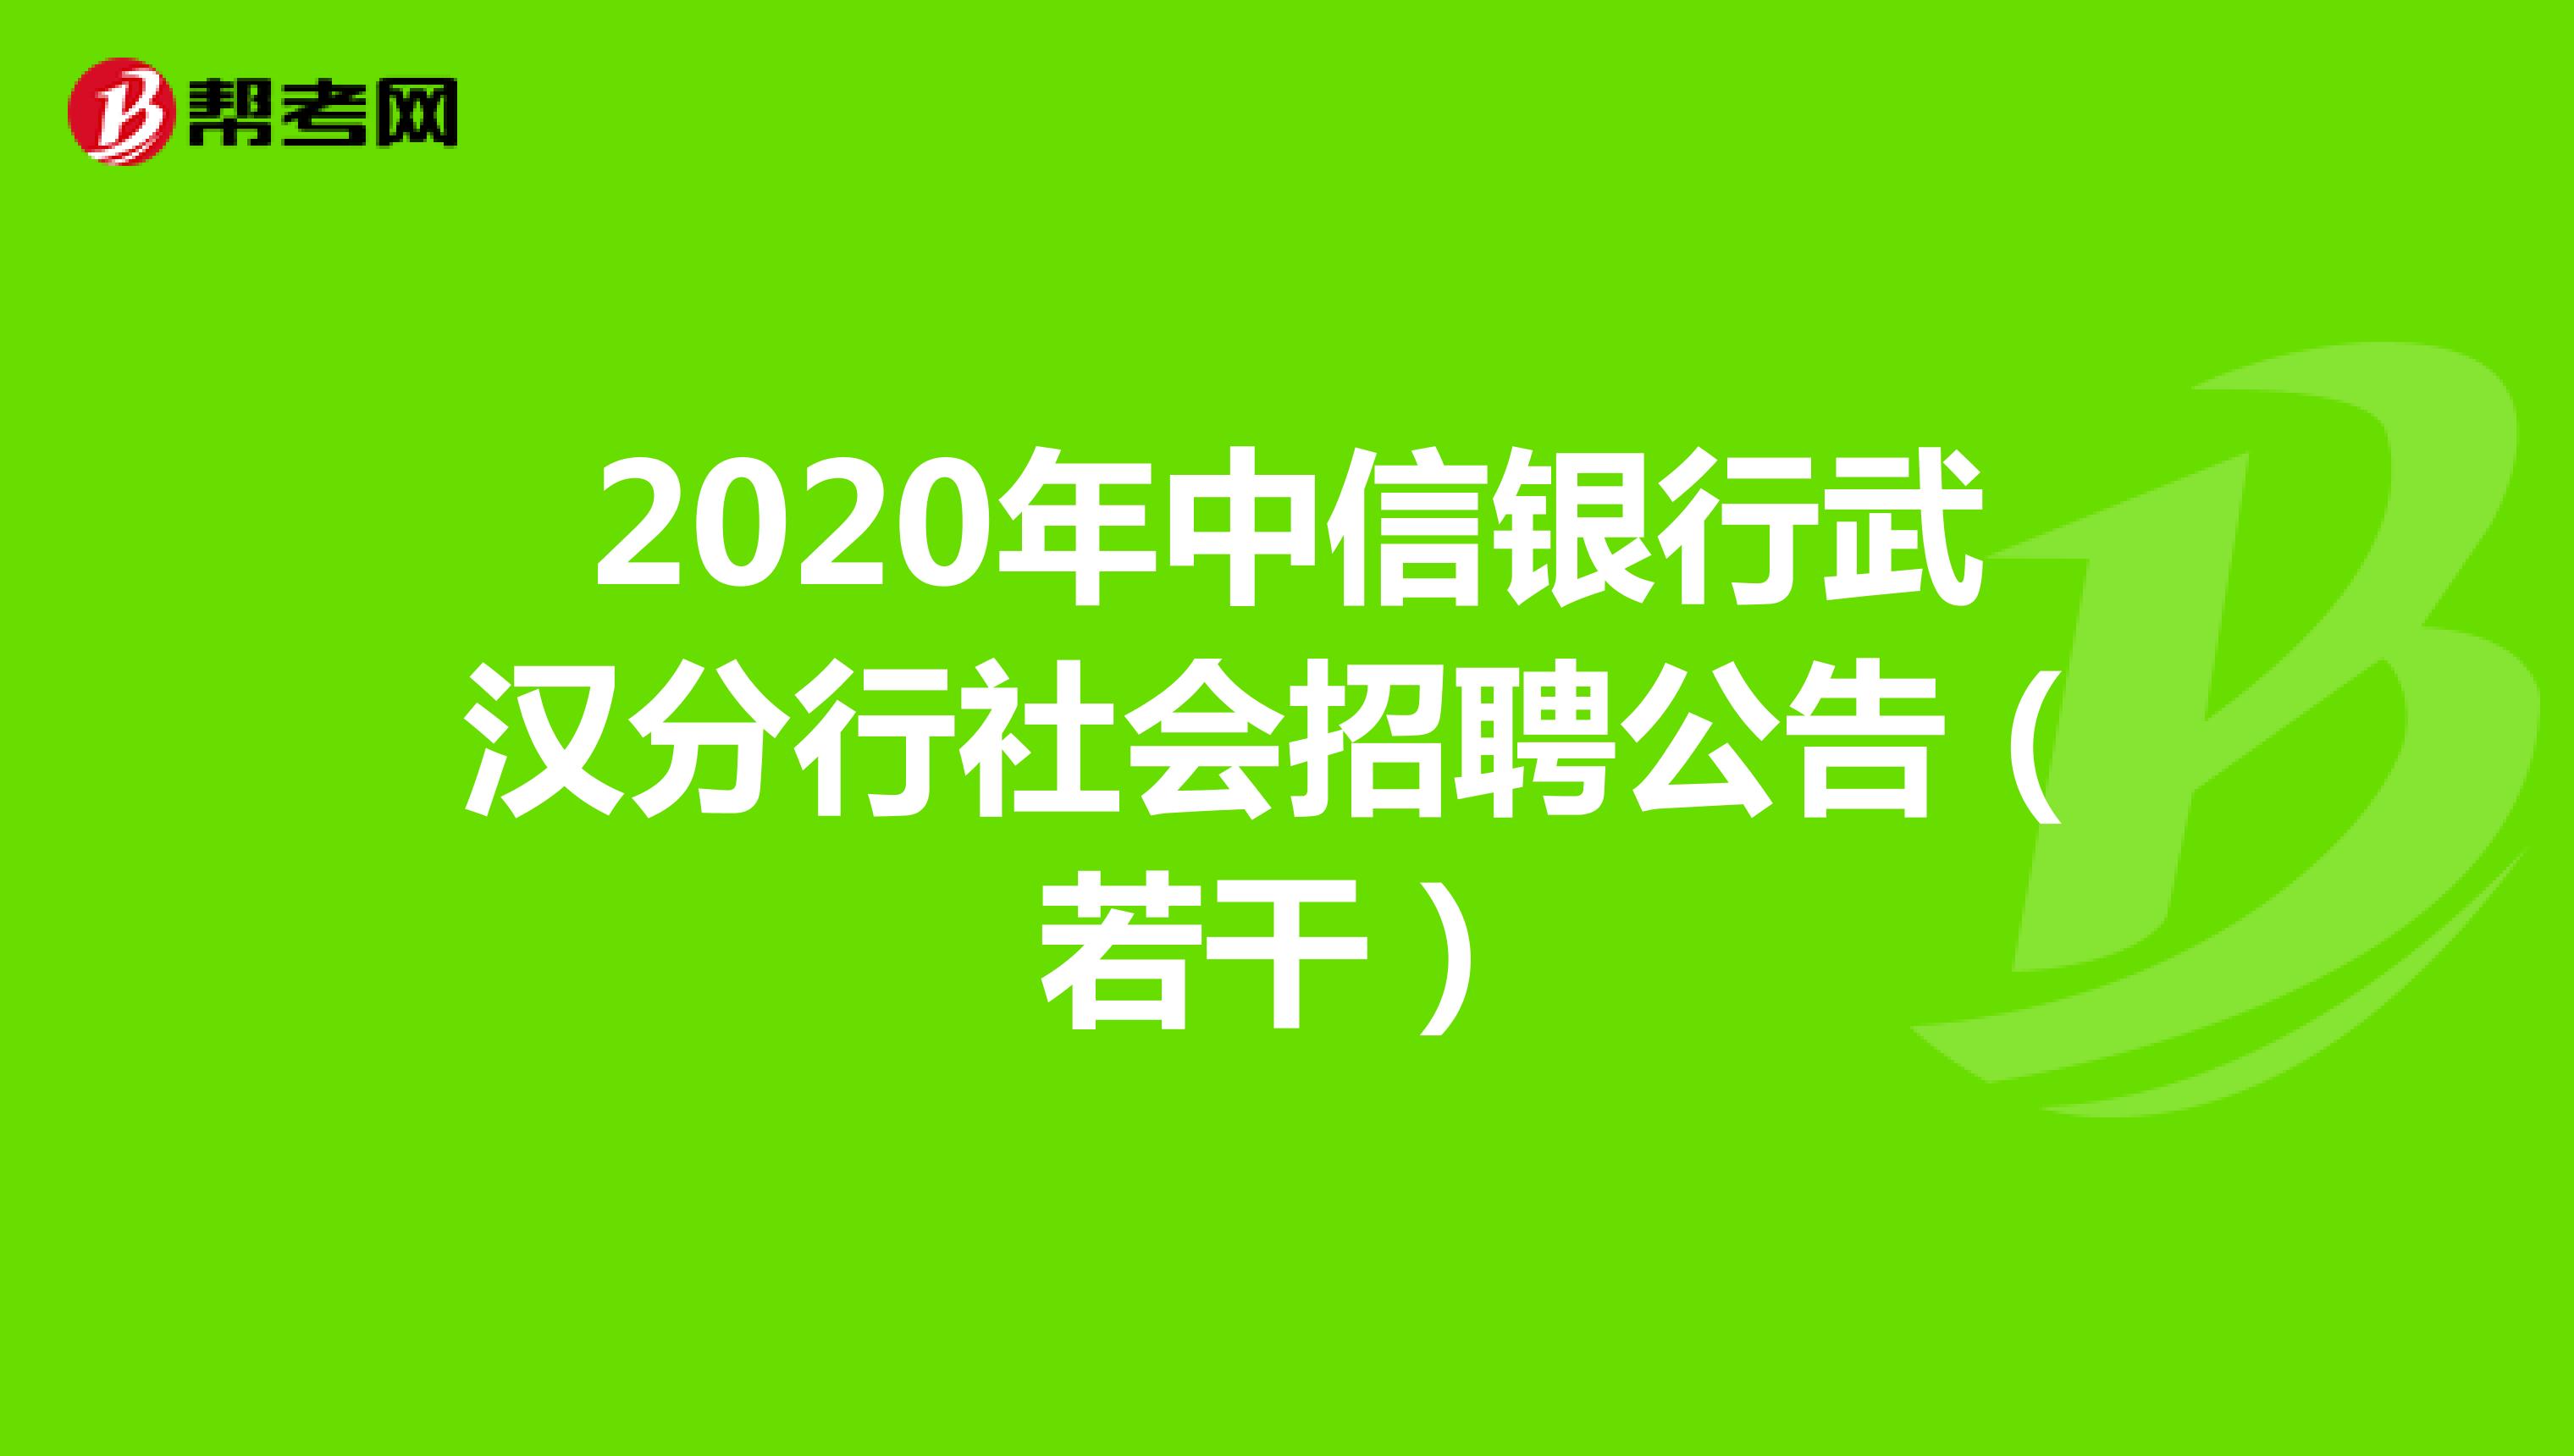 2020年中信银行武汉分行社会招聘公告（若干）